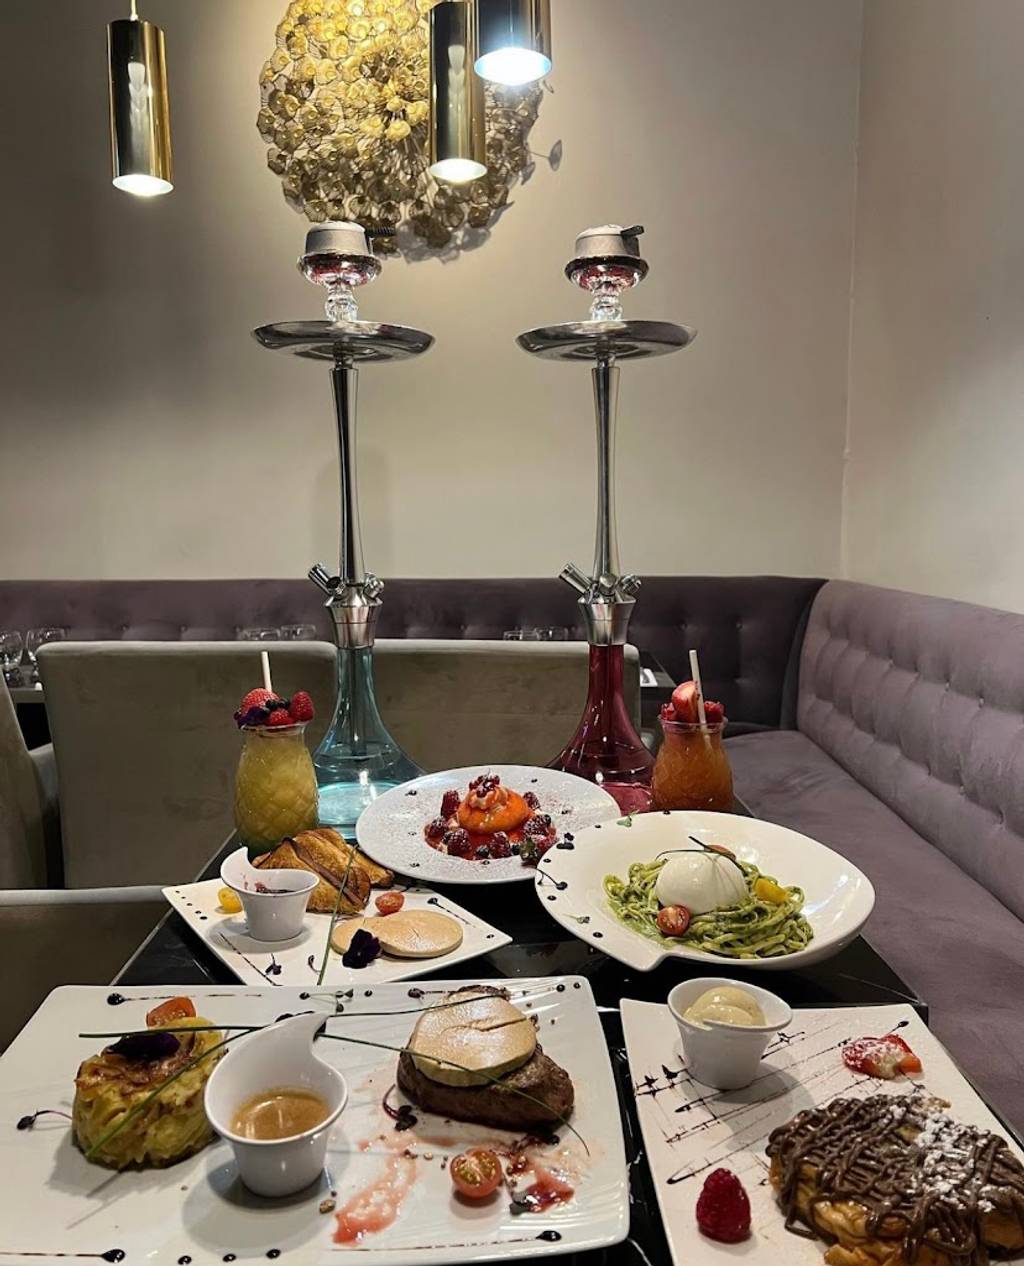 Le Morello | Restaurant Italien Paris Paris - Food Tableware Furniture Table Dishware